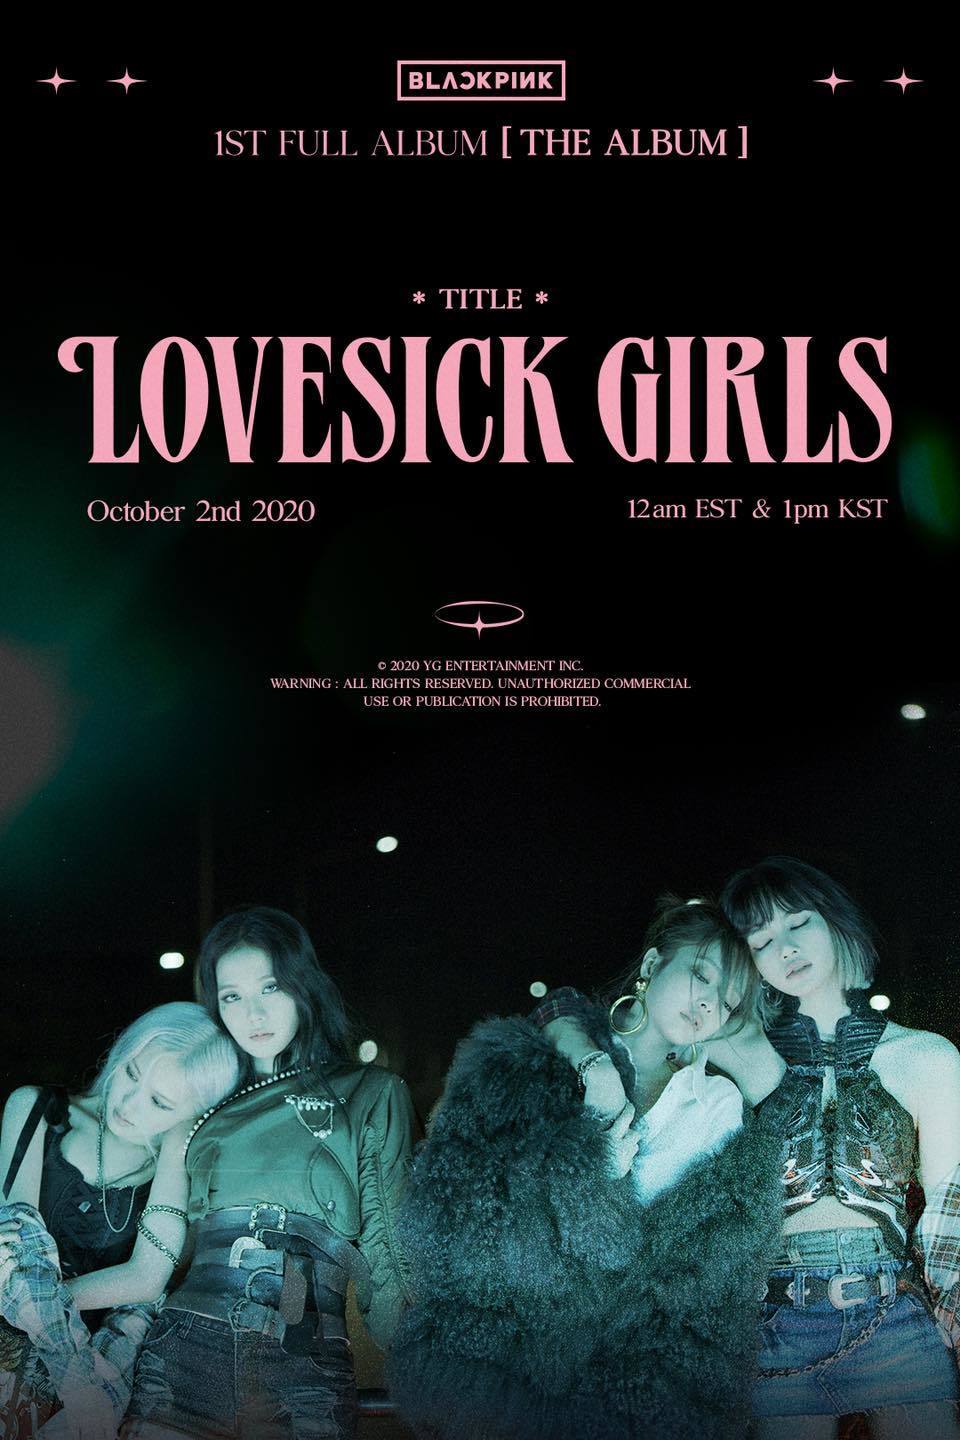 
Ngày 2.10, BLACKPINK ra mắt MV Lovesick Girls. Ảnh: Twitter